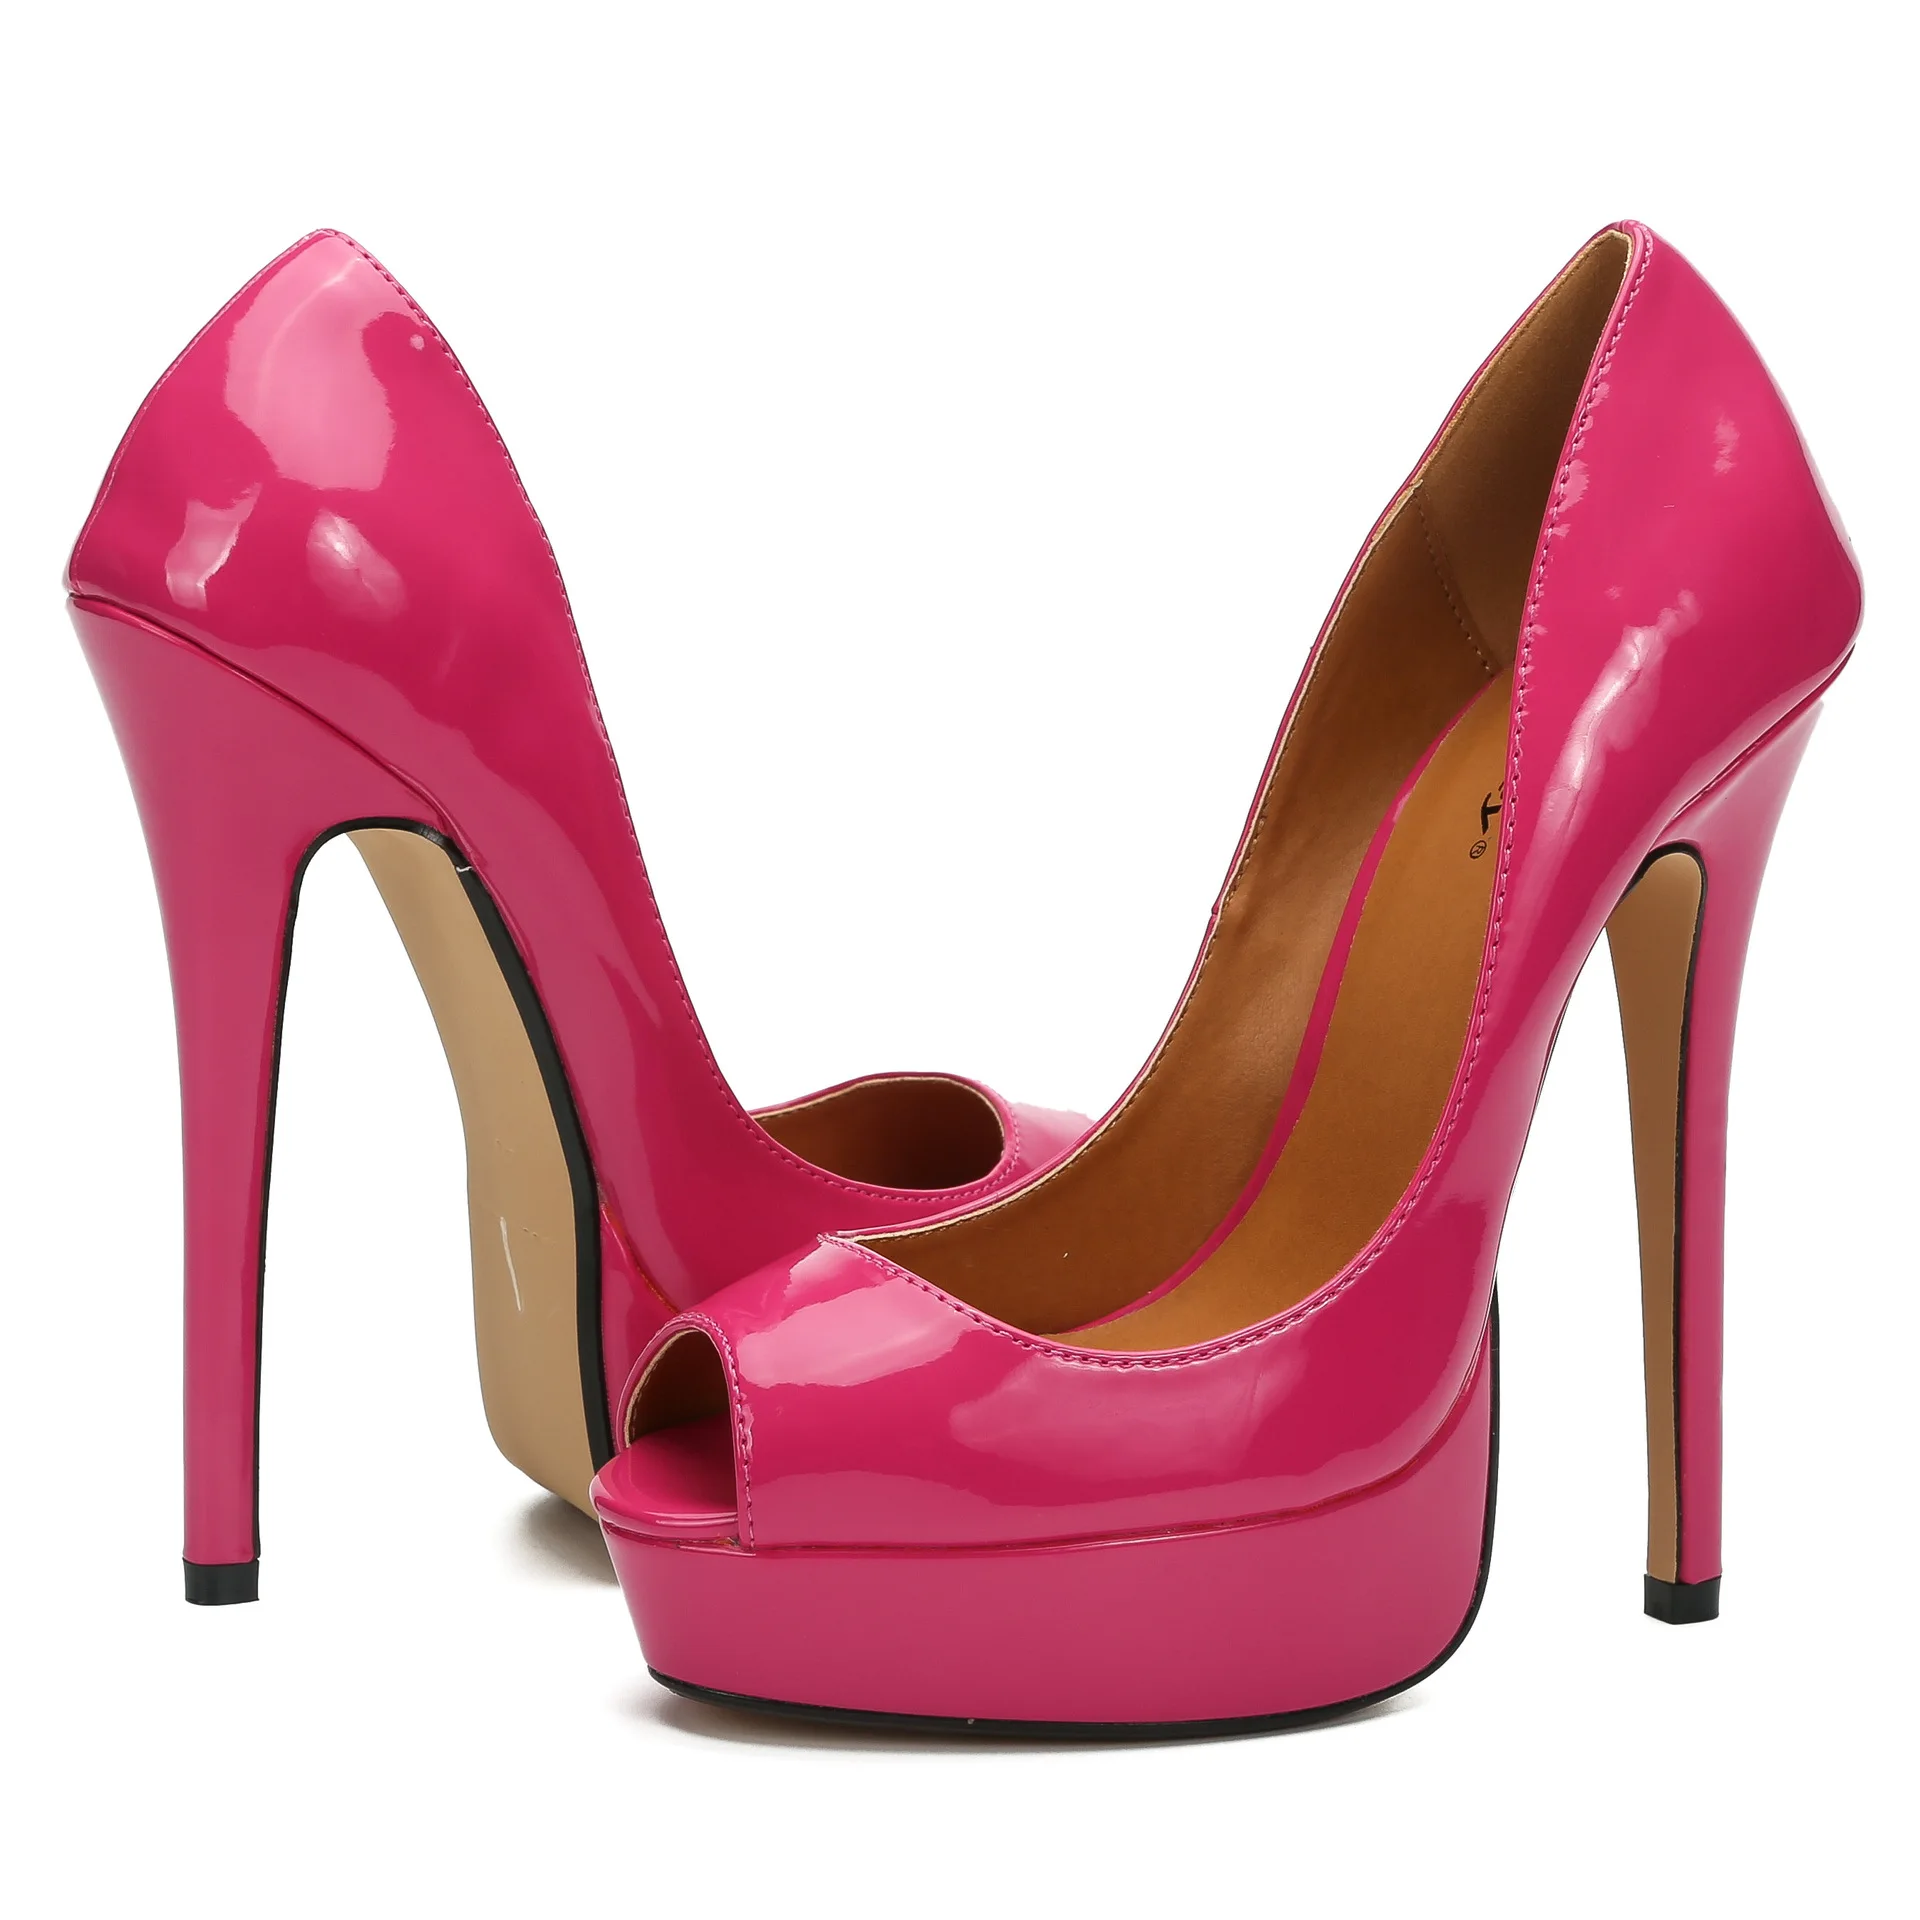 Mclubgirl/пикантные мужские и женские сандалии больших размеров 40-48 пикантные туфли-лодочки с открытым носком Клубная обувь для вечеринок обувь на высоком каблуке обувь черного и красного цвета ZQJ